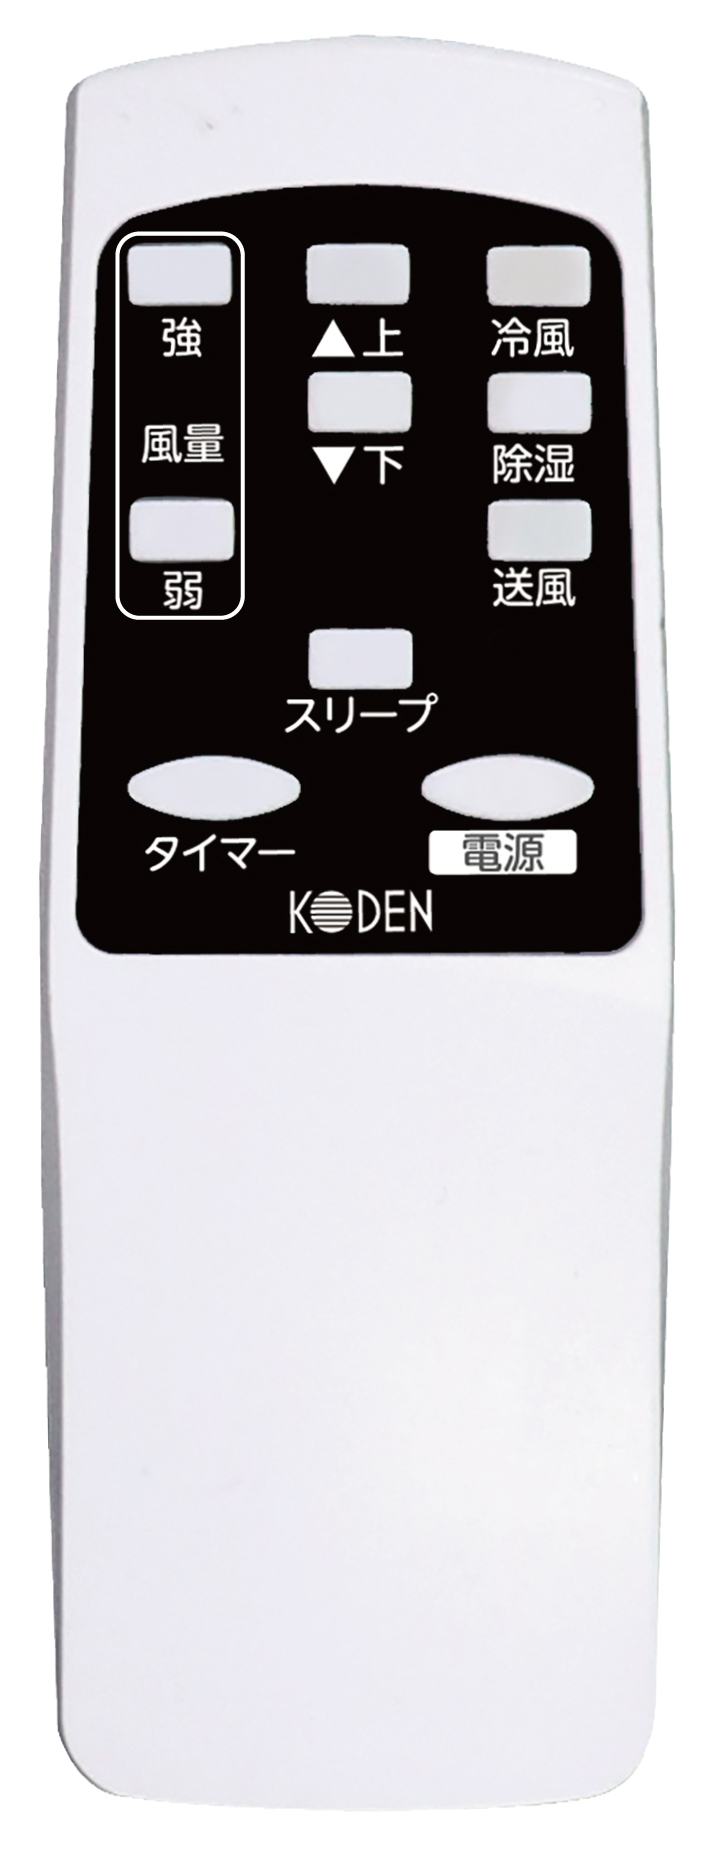 KEP203R | 移動式クーラー 冷風タイプ ノンドレン方式 | KODEN for summer | 製品情報 | 株式会社 広電 [ KODEN  ]